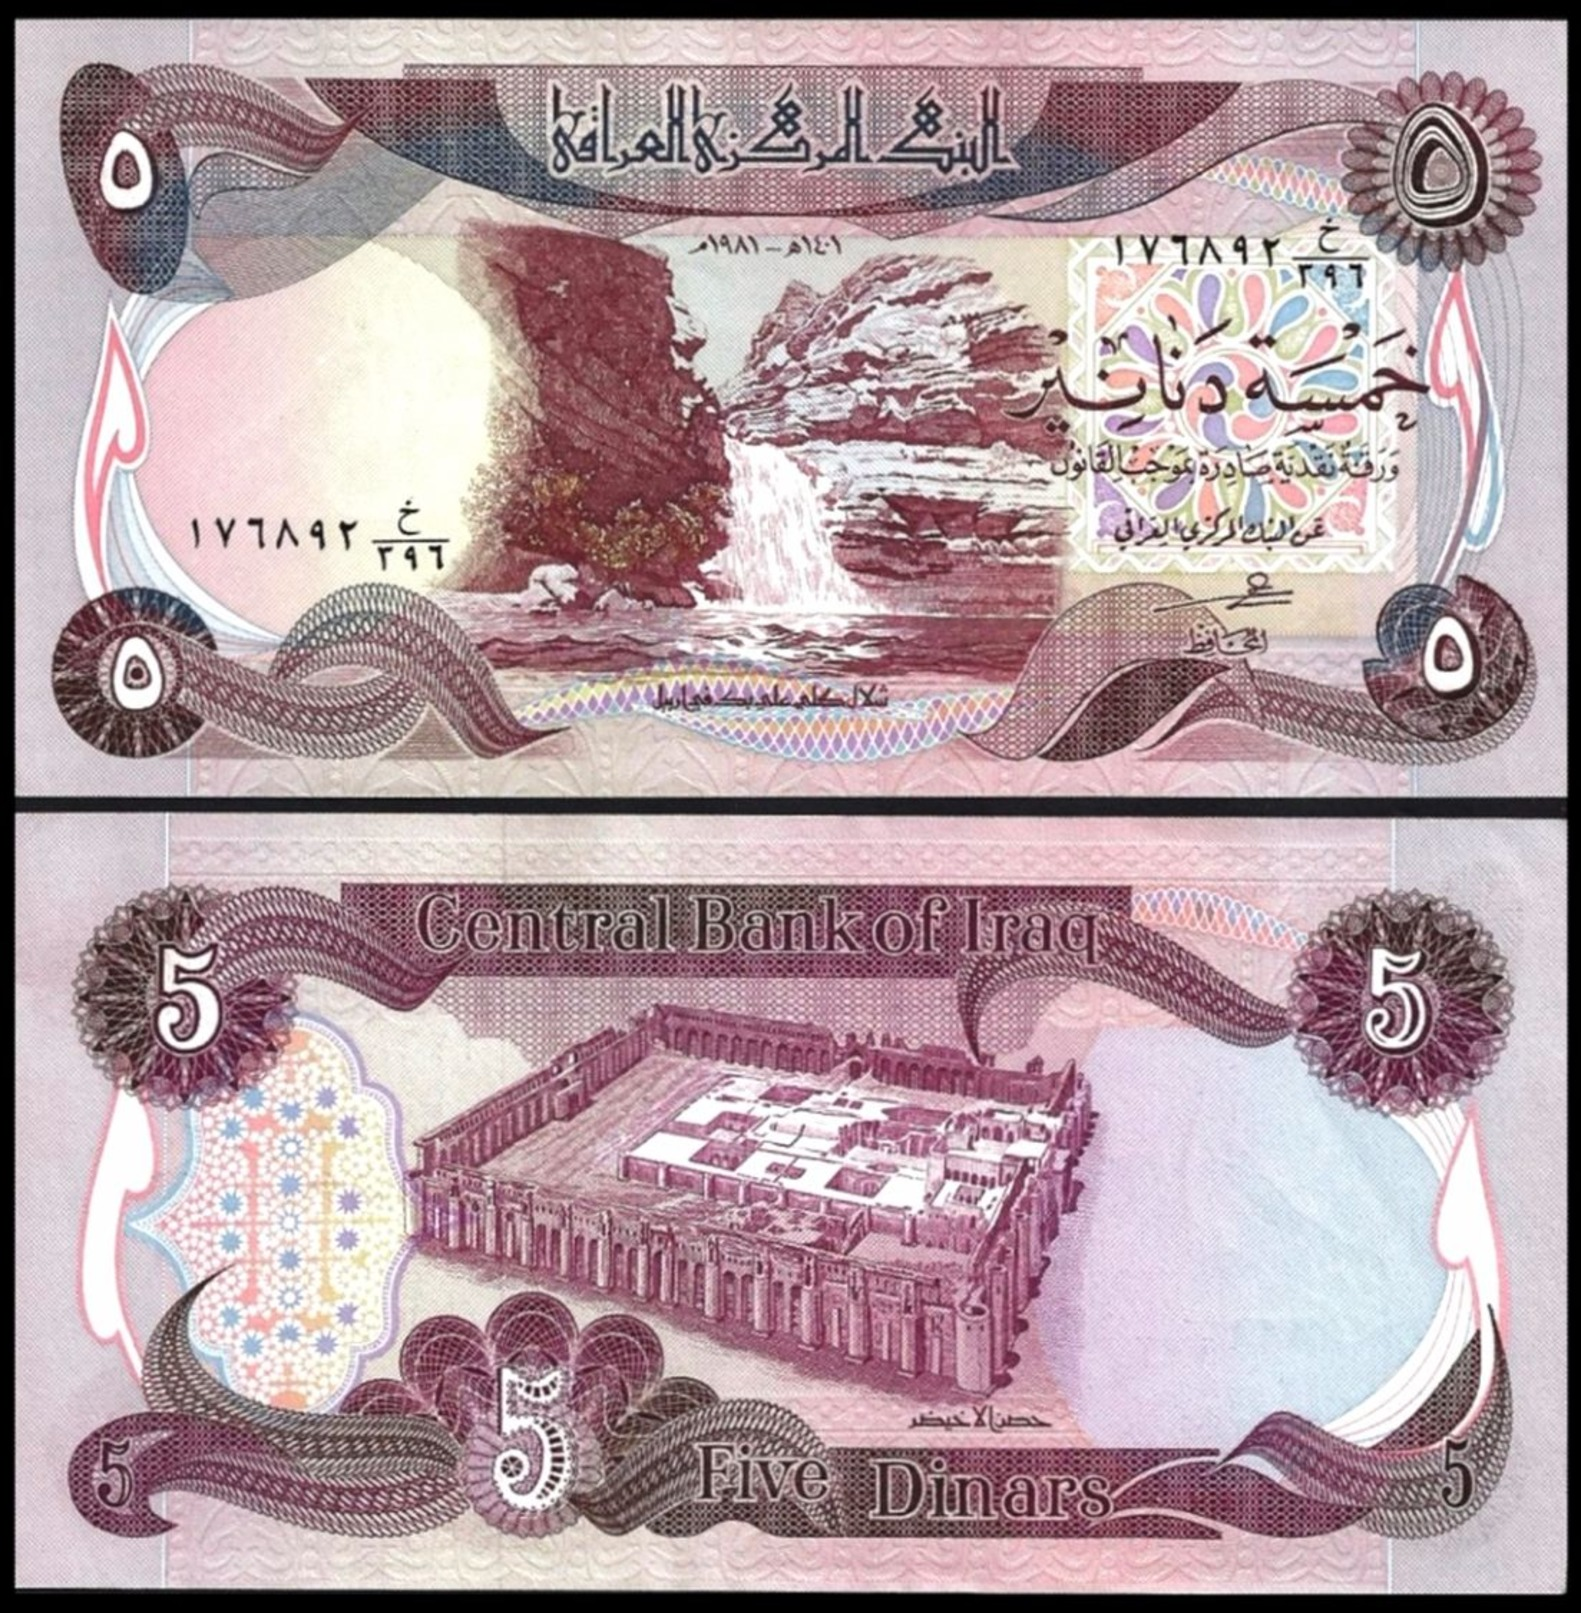 IRAQ 5 DINARS 1981 P 70 UNC - Iraq